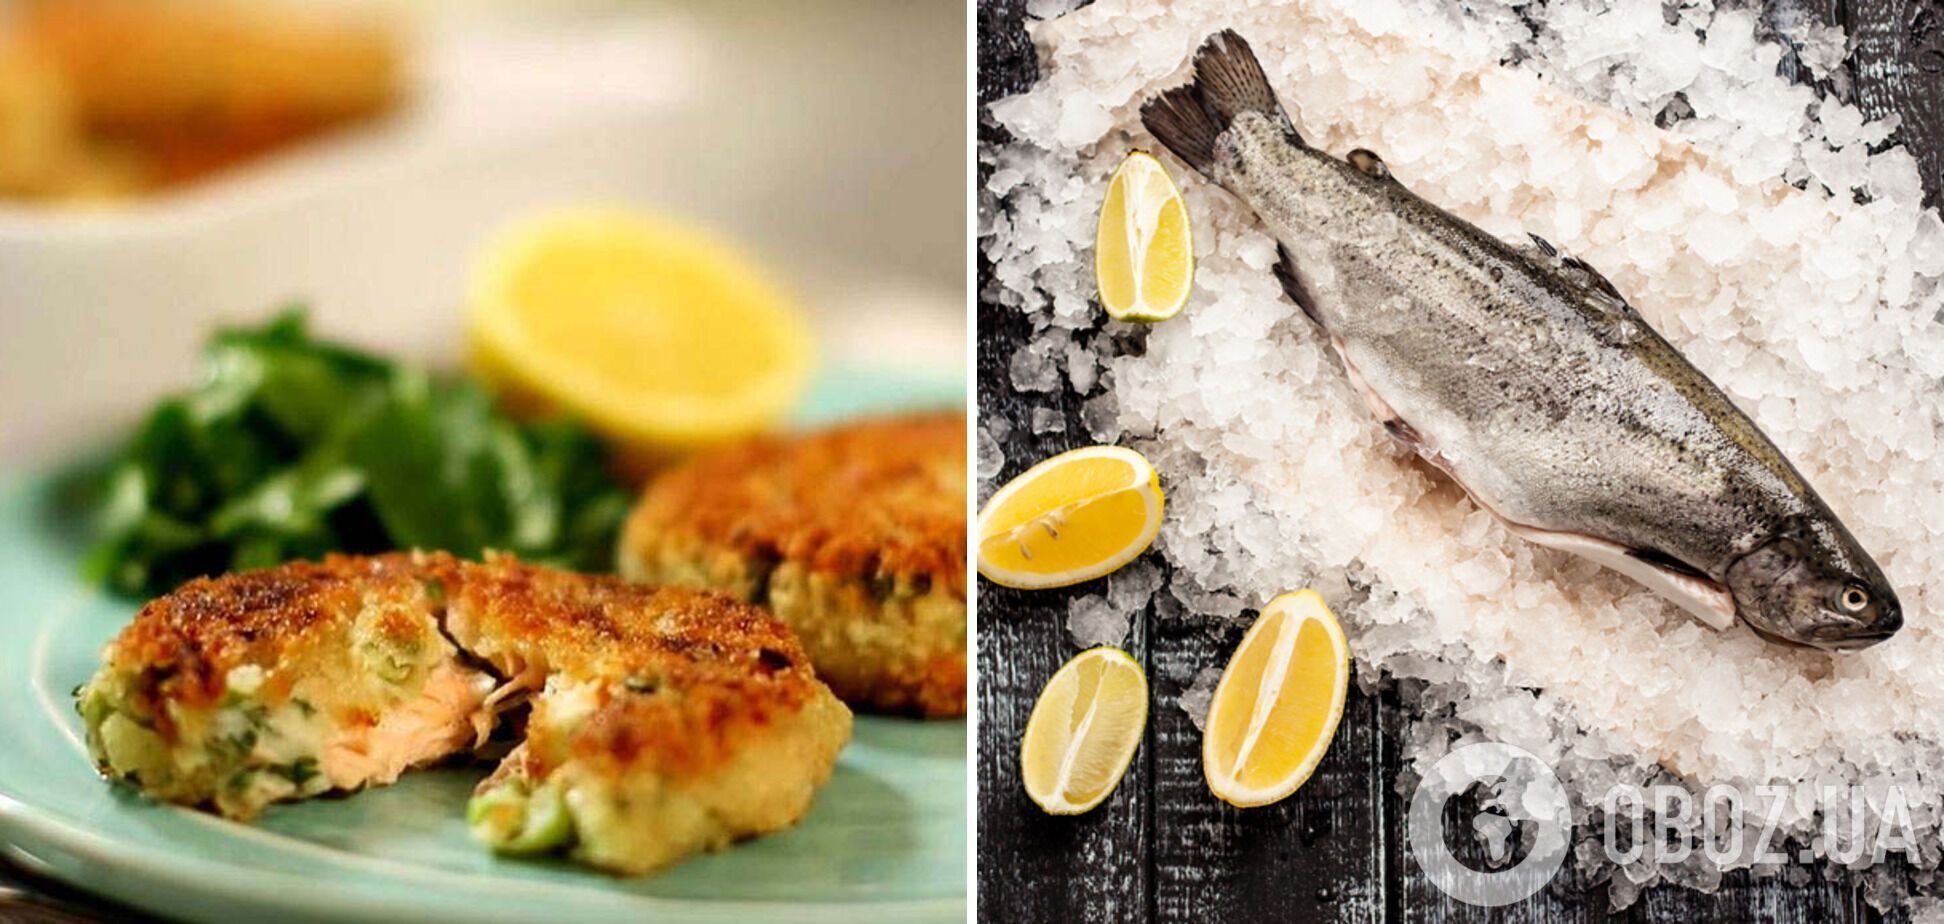 Як не можна готувати рибу: помилки, які зіпсують продукт